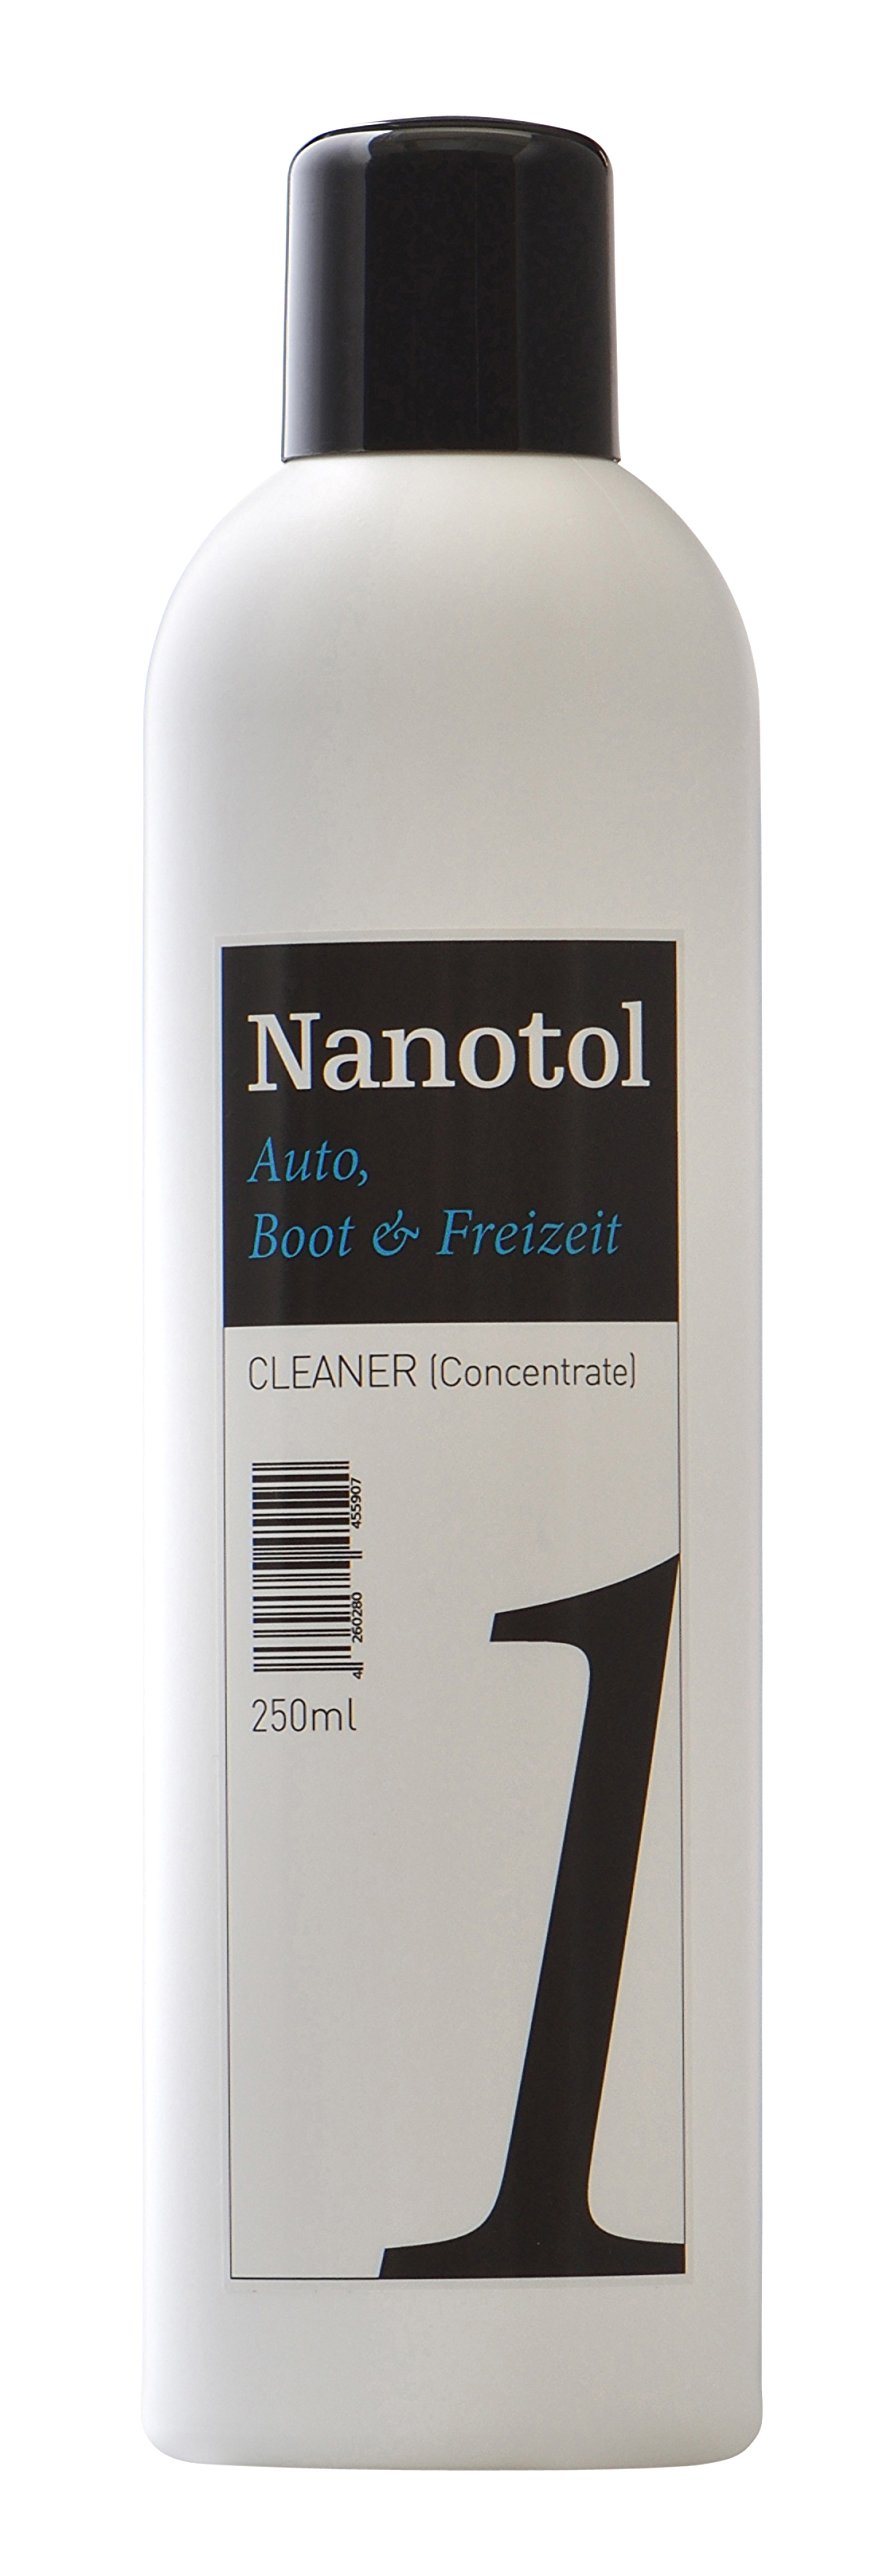 Nanotol Auto, Boot, Freizeit Cleaner - Fahrzeugreiniger Konzentrat - Lackreiniger Felgenreiniger Intensivreiniger Tiefenreiniger Autoshampoo von Nanotol